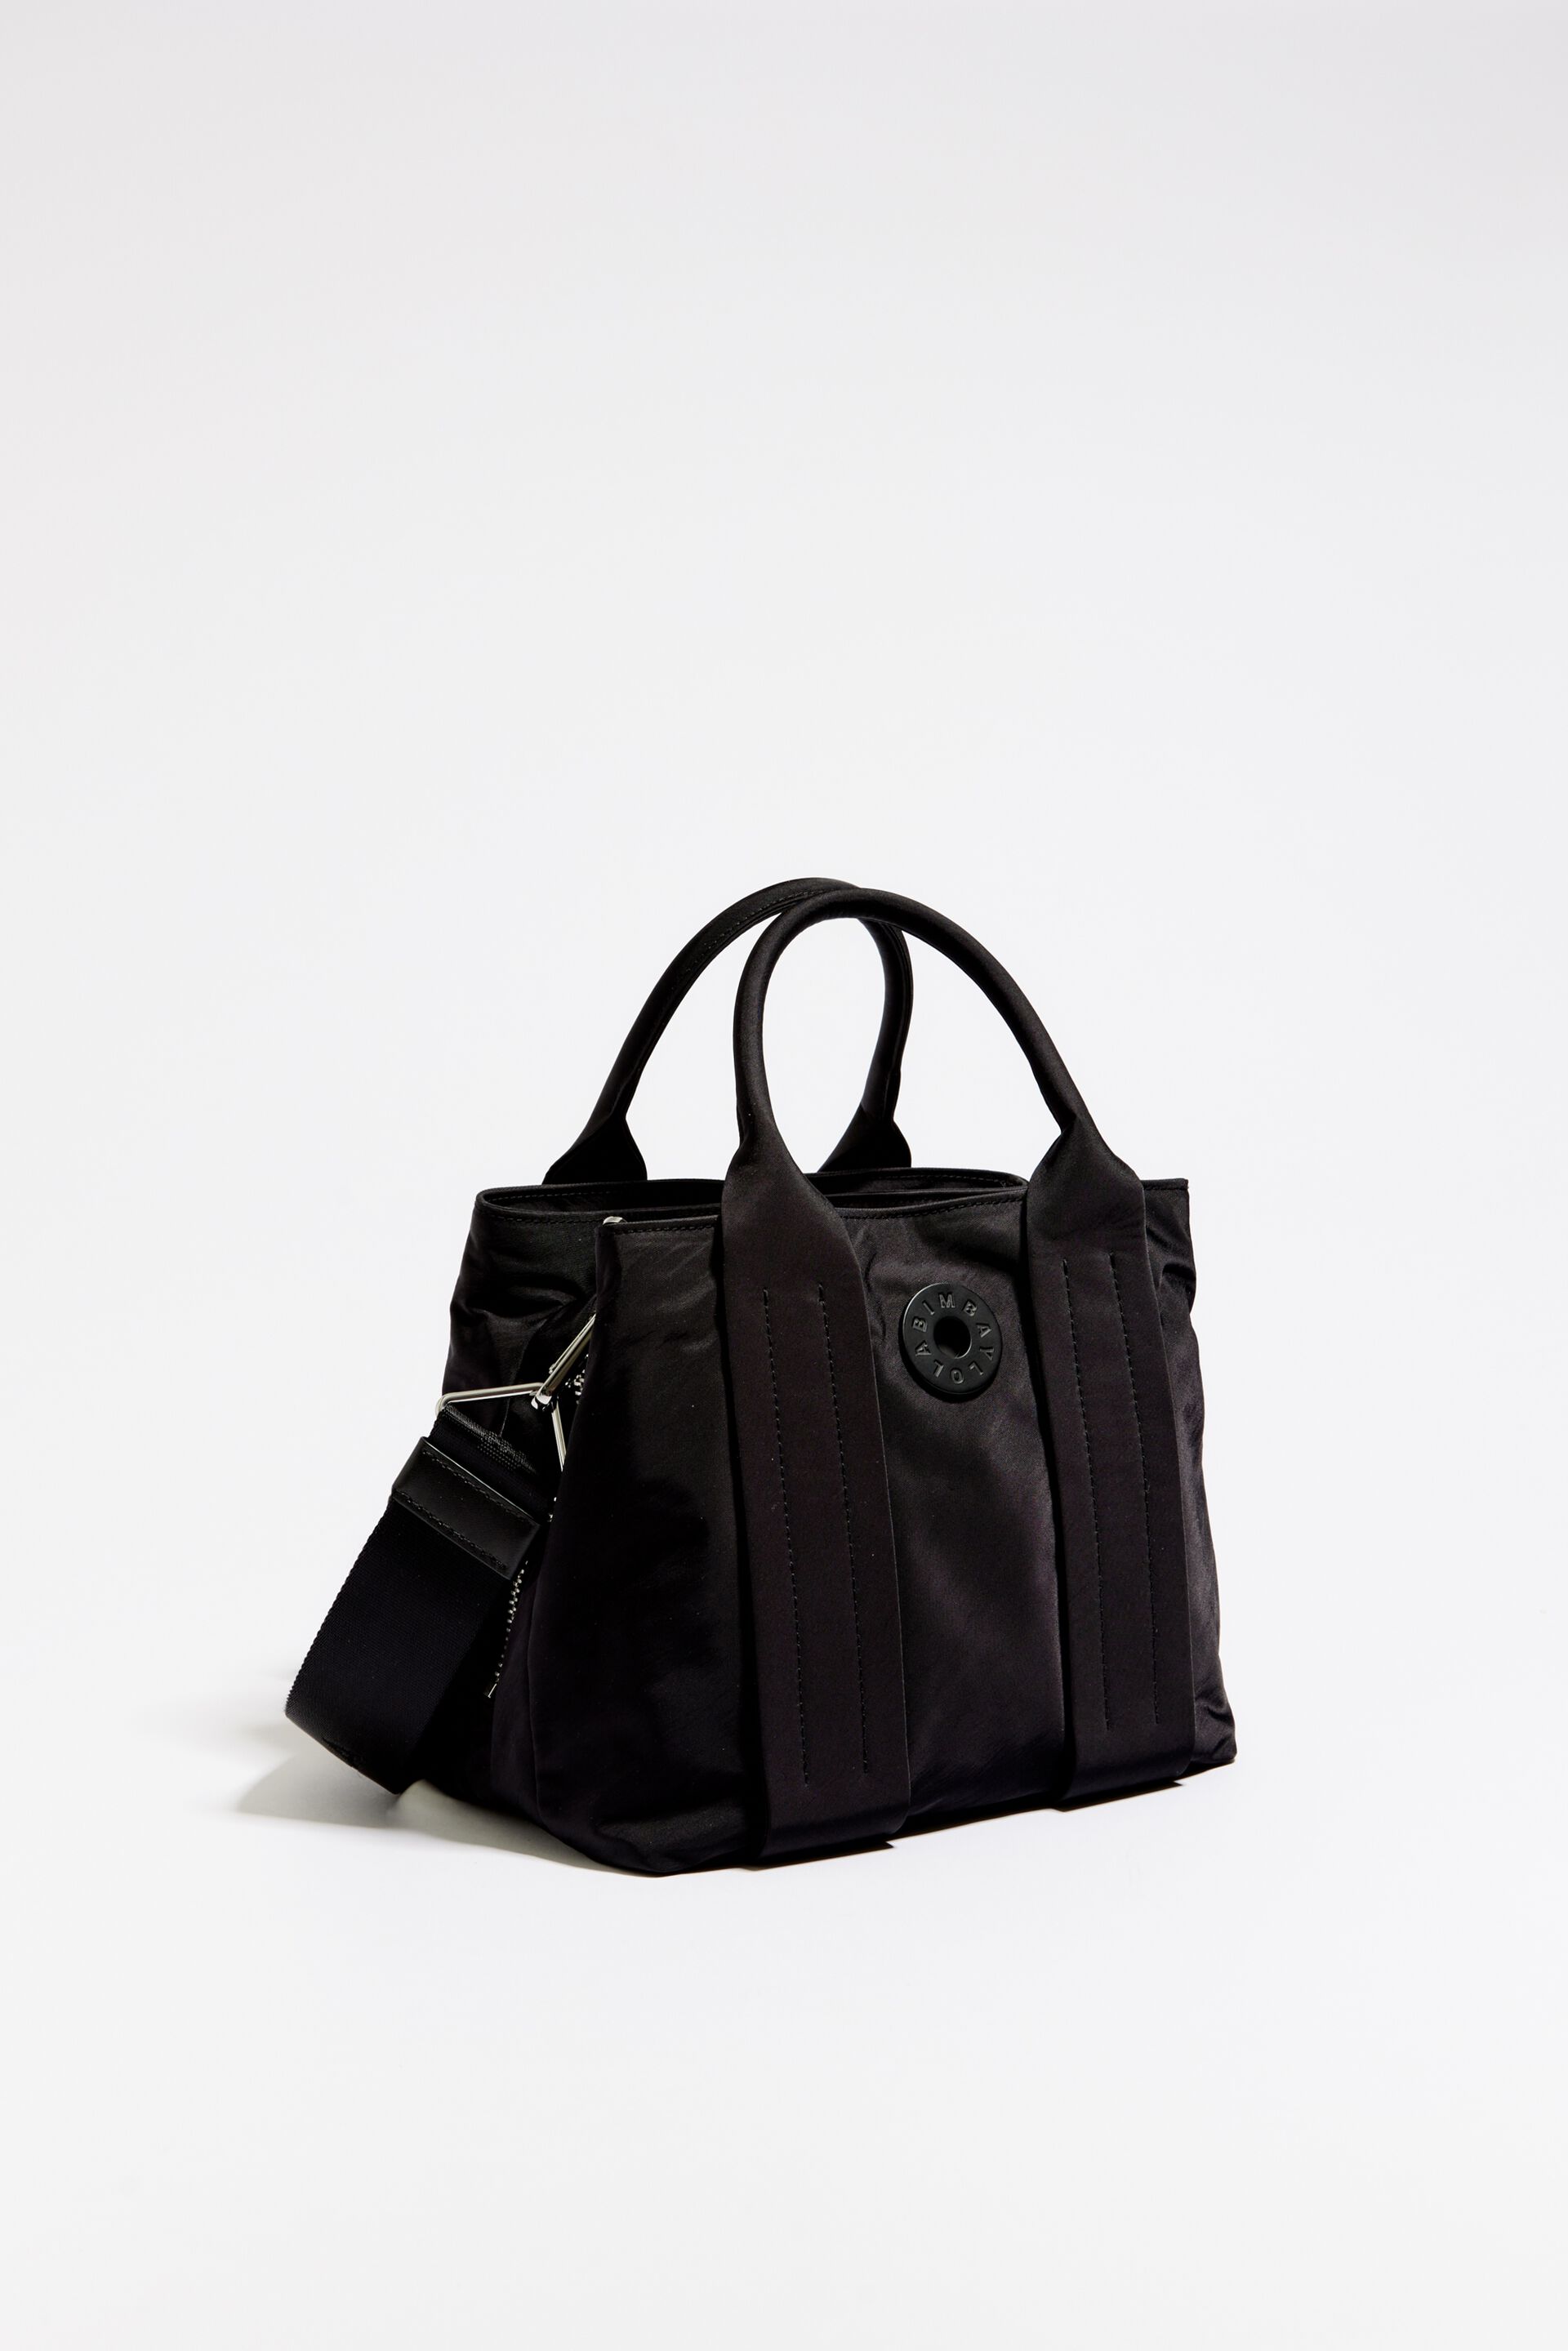 Bimba y Lola Black Bucket Bag One Size - 80% off